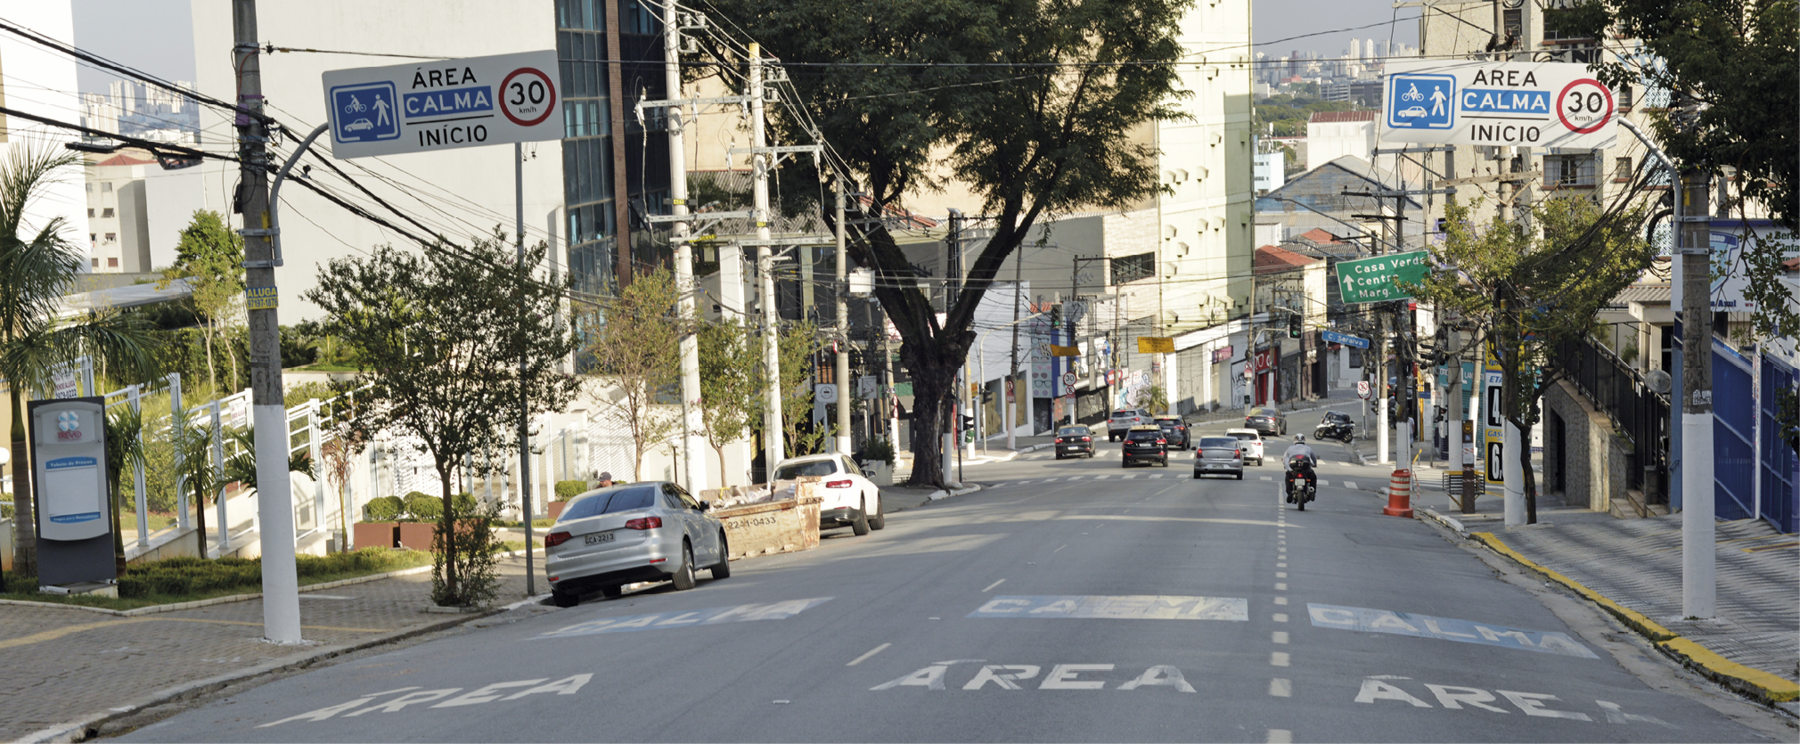 Fotografia de uma rua ampla com alguns carros estacionados e alguns carros andando mais à frente. Há duas placas nas laterais da rua, com a mensagem área calma, início, 30 quilômetros por hora.